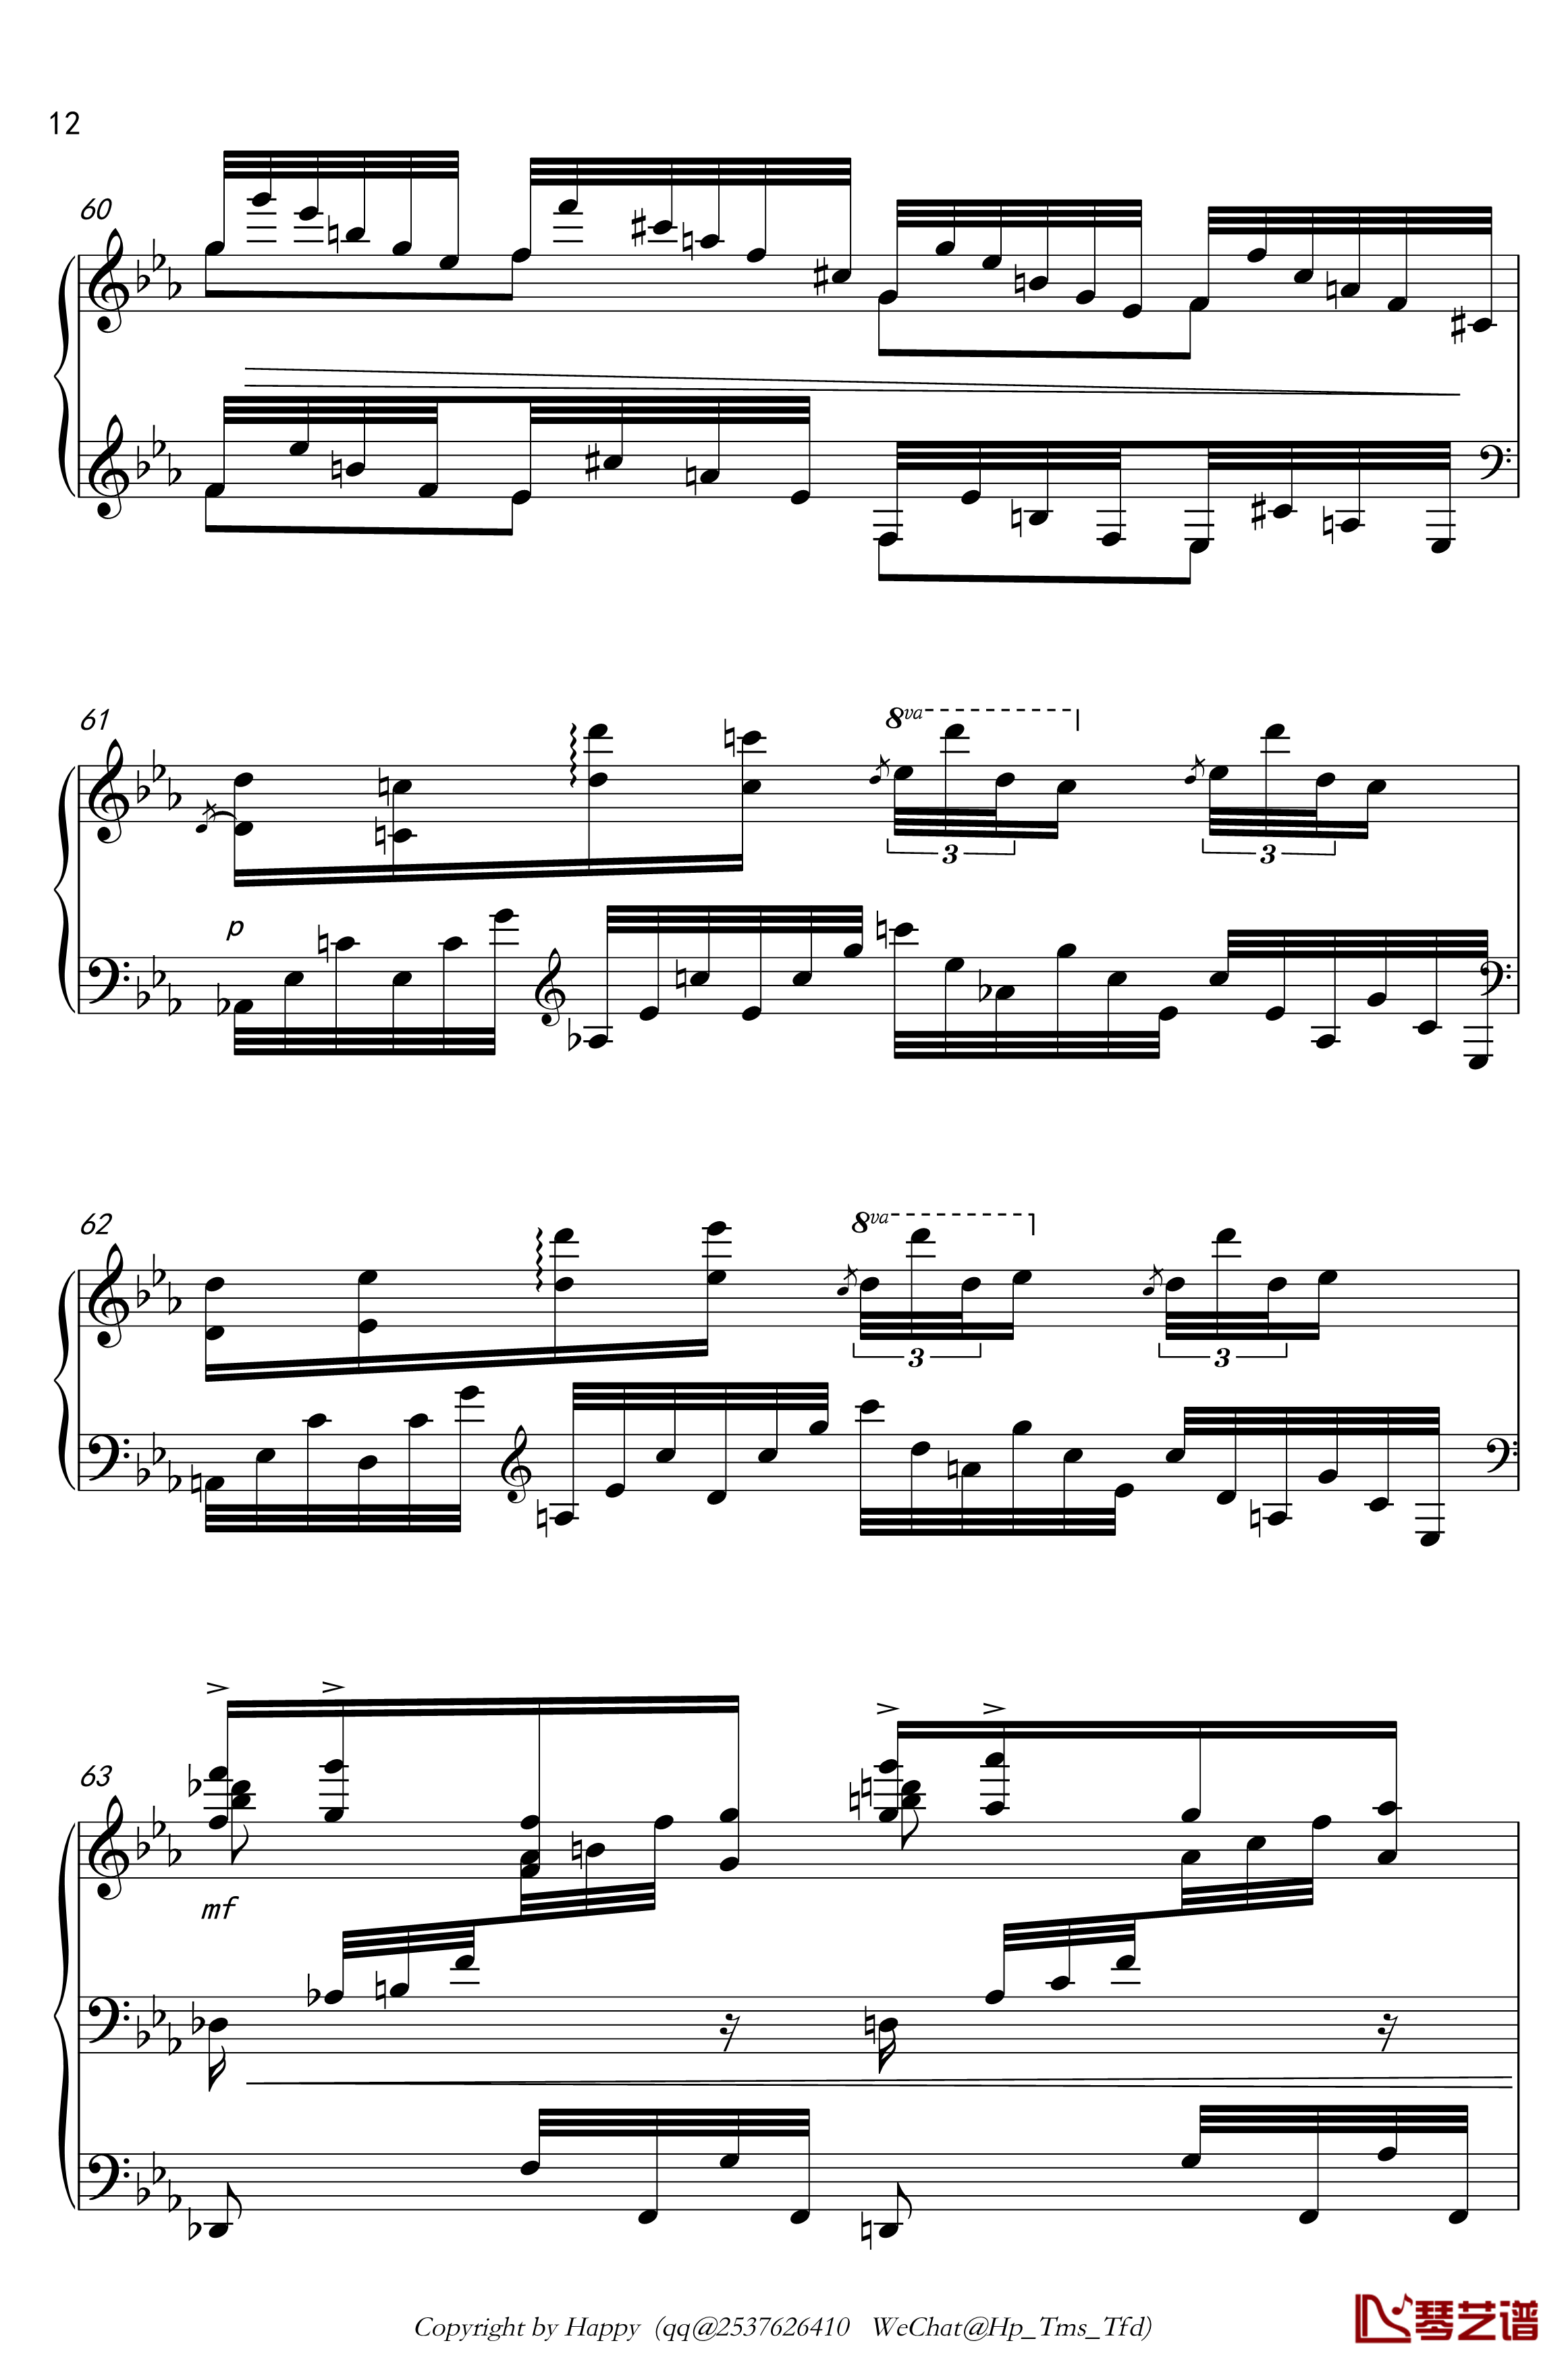 幻想风格琶音练习曲钢琴谱-Kreuz12